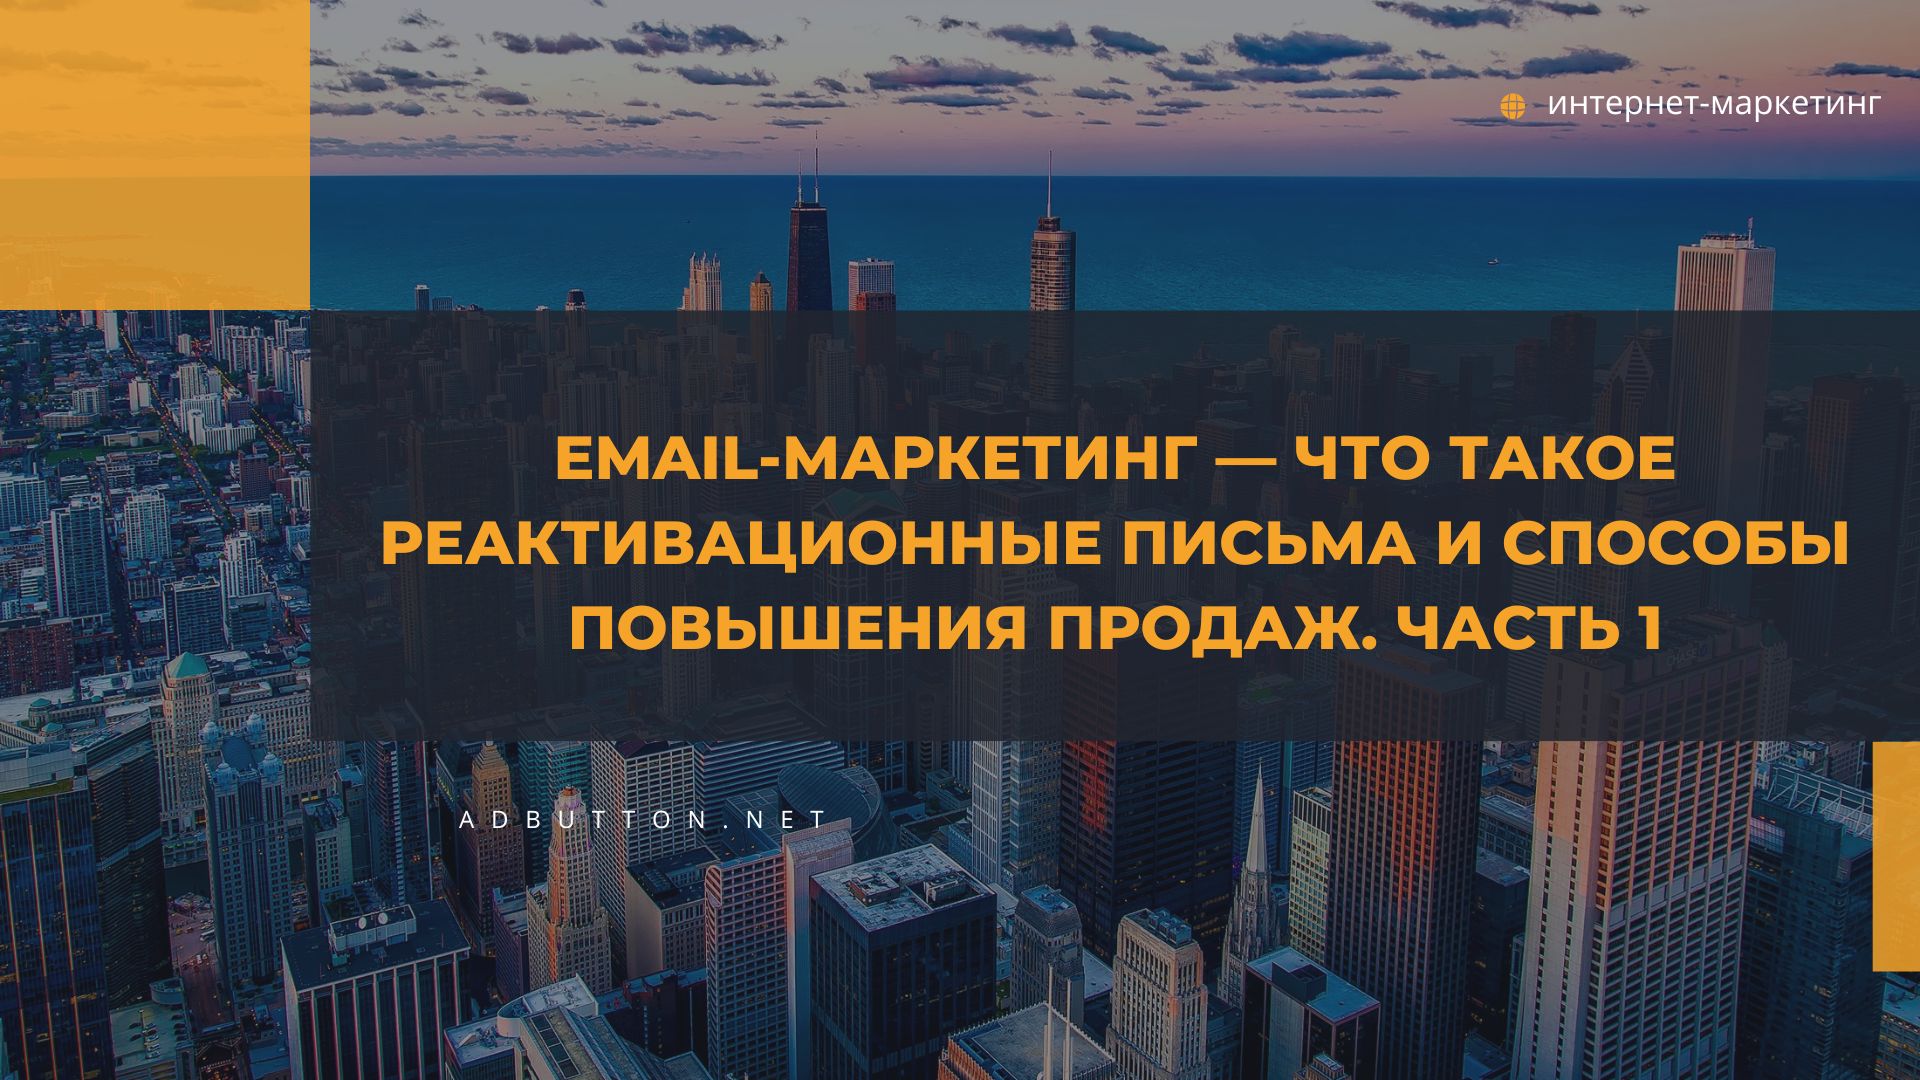 Email-маркетинг — Что такое реактивационные письма и способы повышения продаж. Часть 1